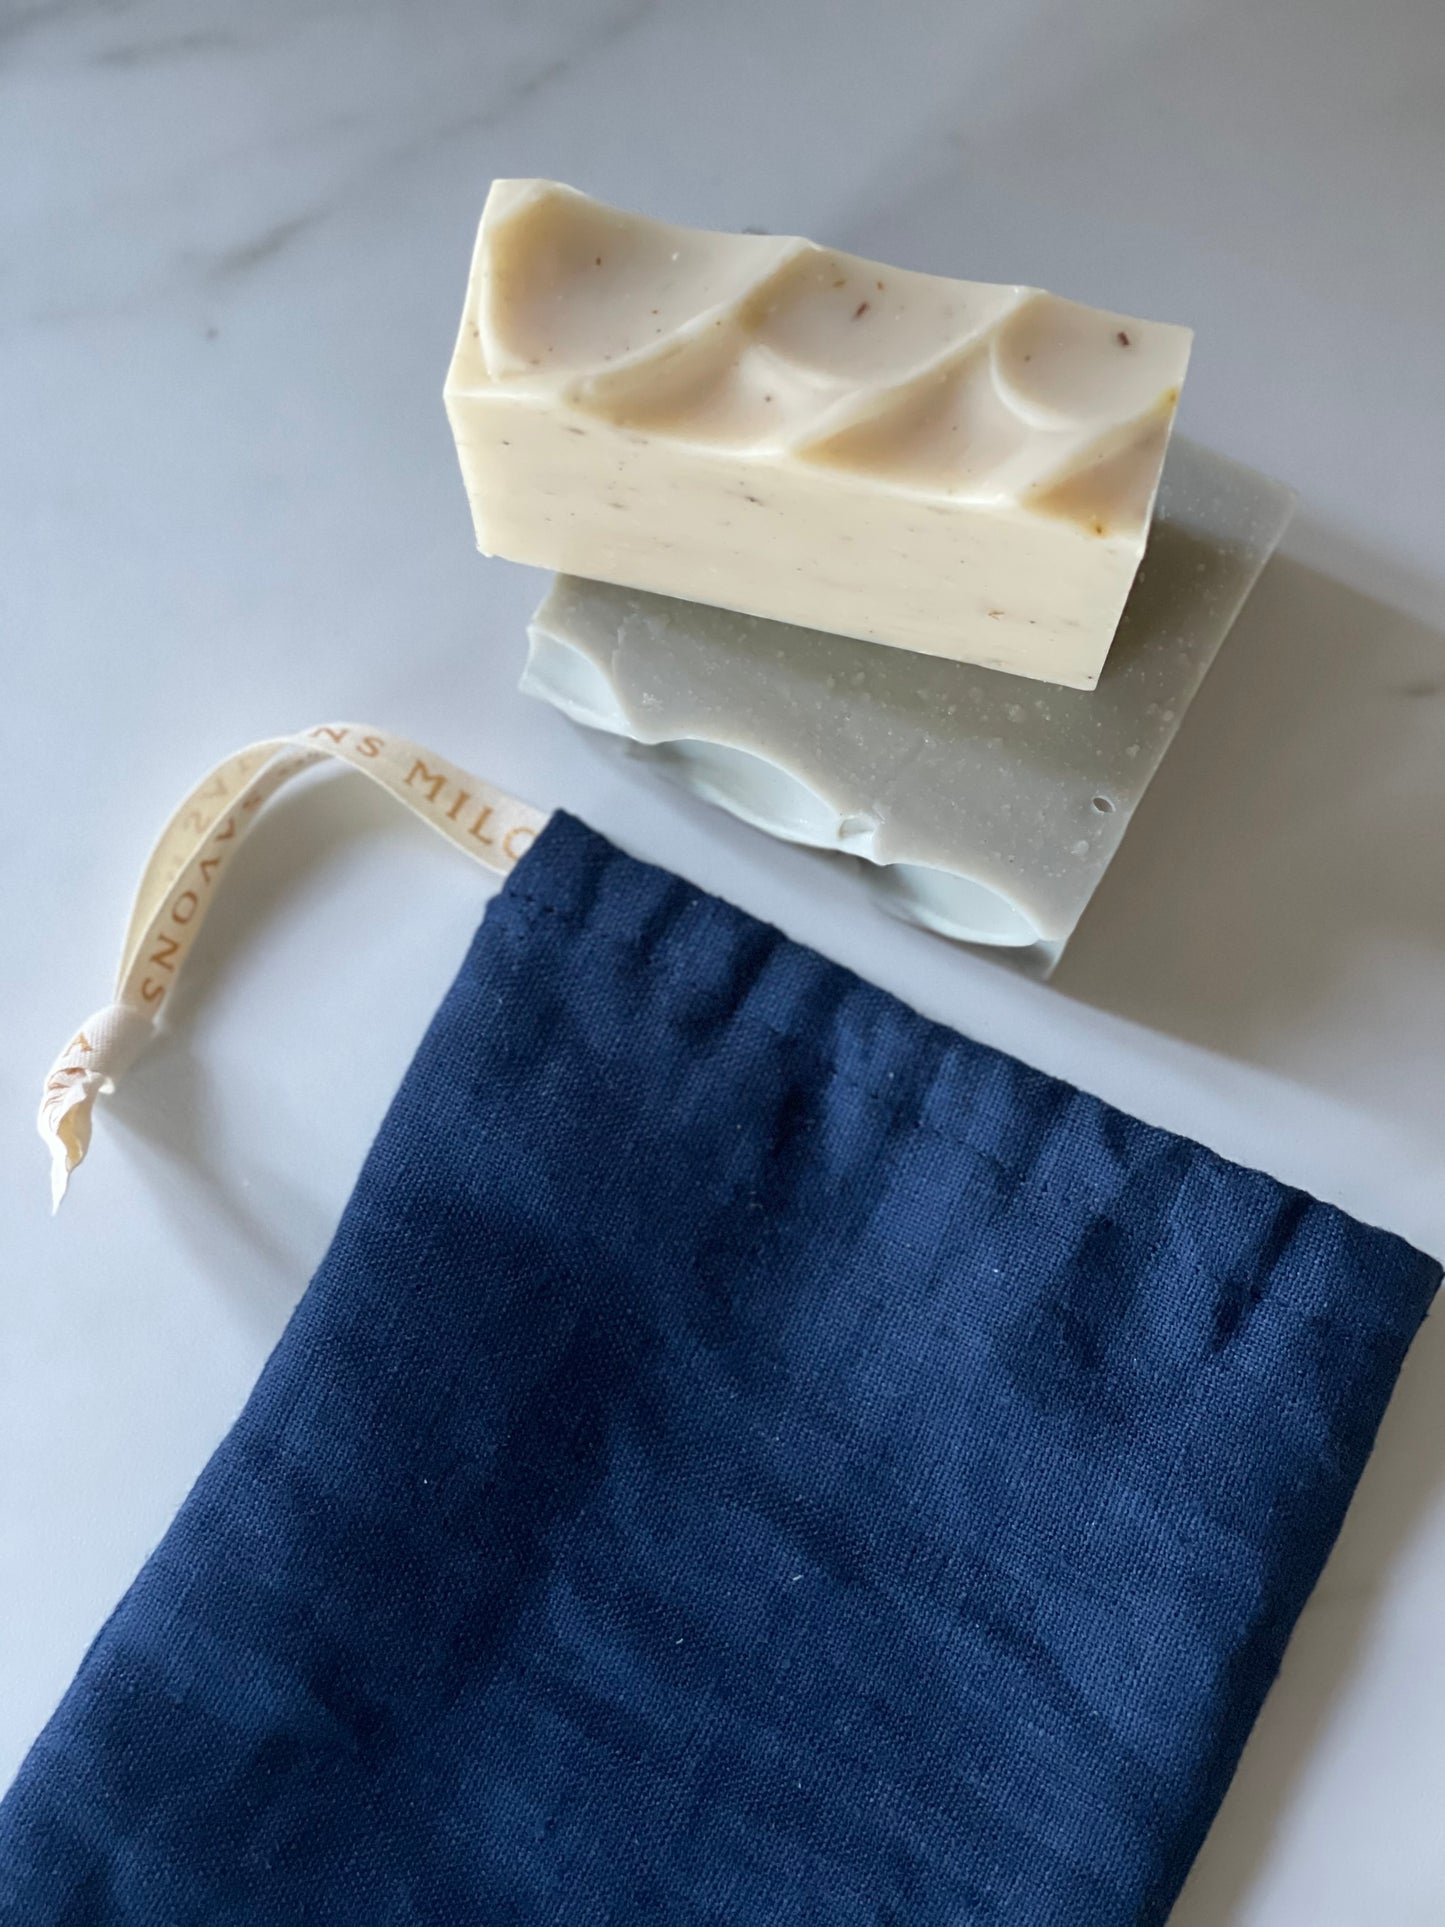 Pochette à savons en lin bio fabriquée au Québec / Organic linen pouch